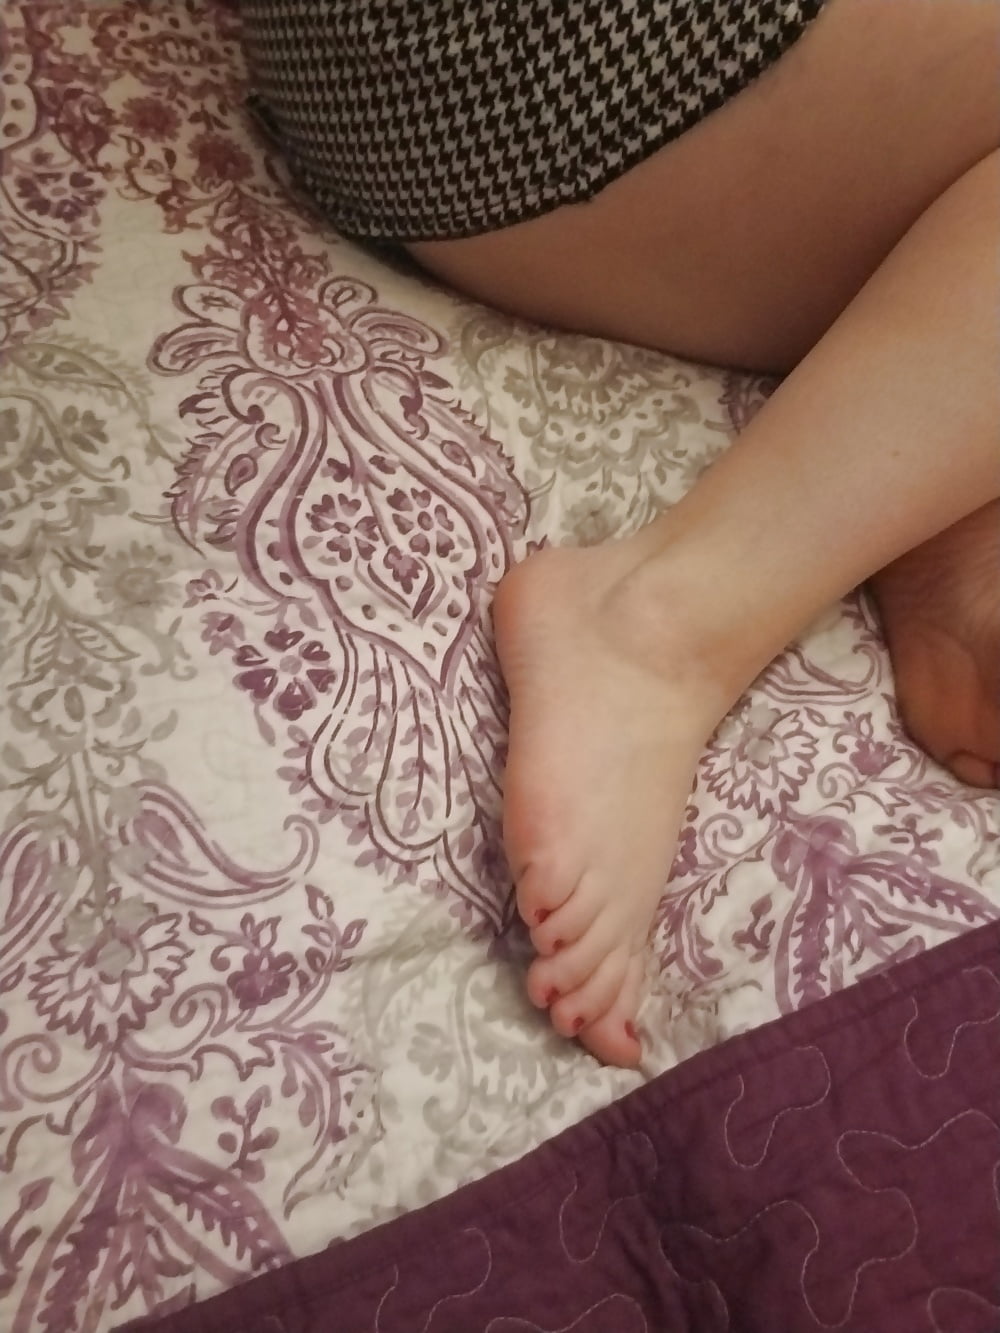 Füße, Beine, Fersen und Stiefel der süßen sexy Hausfrau
 #106605623